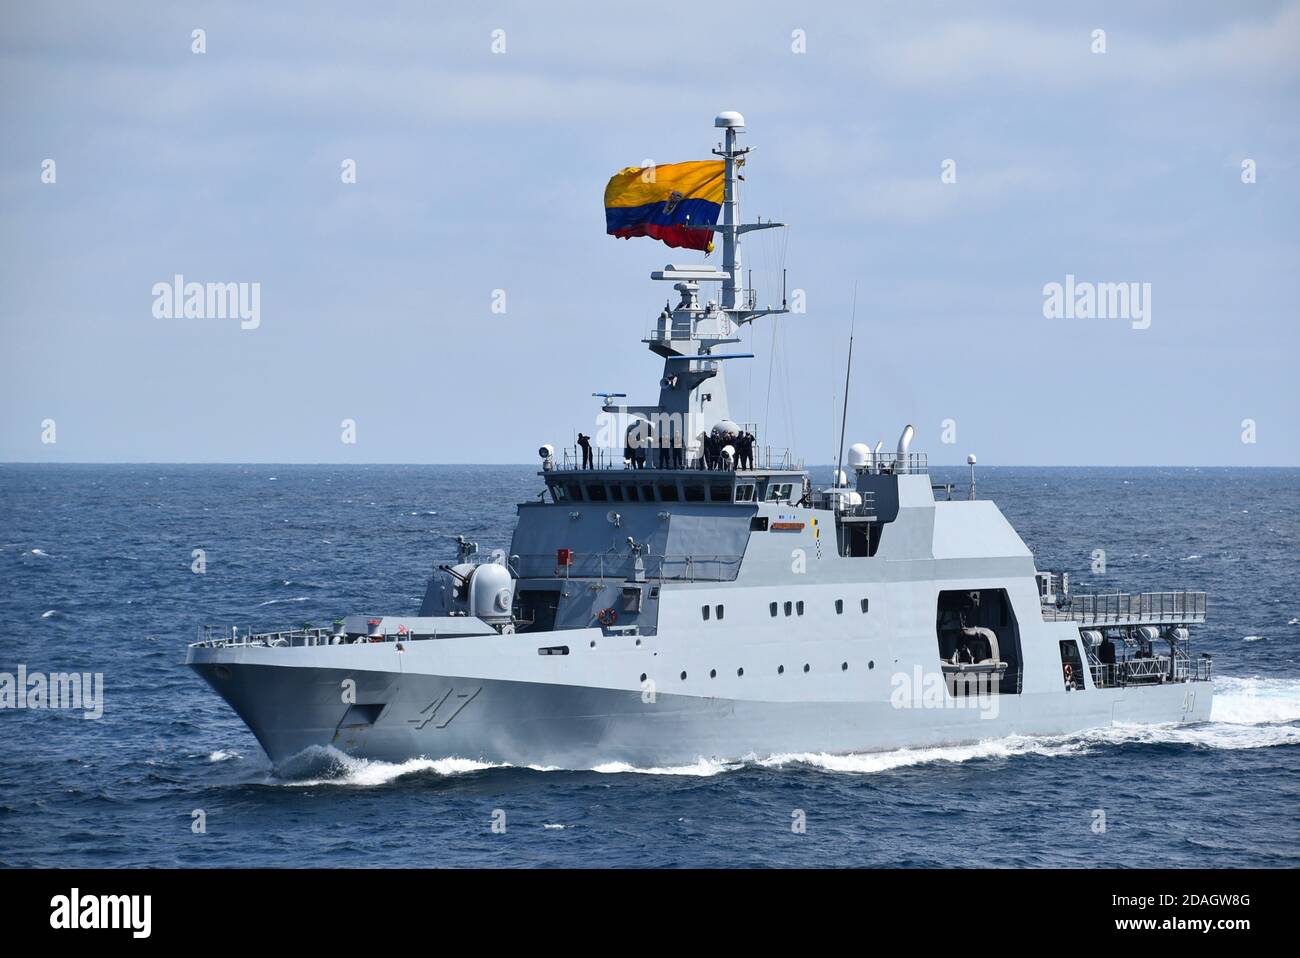 Ecuadorian Navy Seawolf class fast attack ship L.A.E. Cuenta during exercise UNITAS LXI in the Pacific Ocean November 4, 2020 off the coast of Manta, Ecuador. Stock Photo